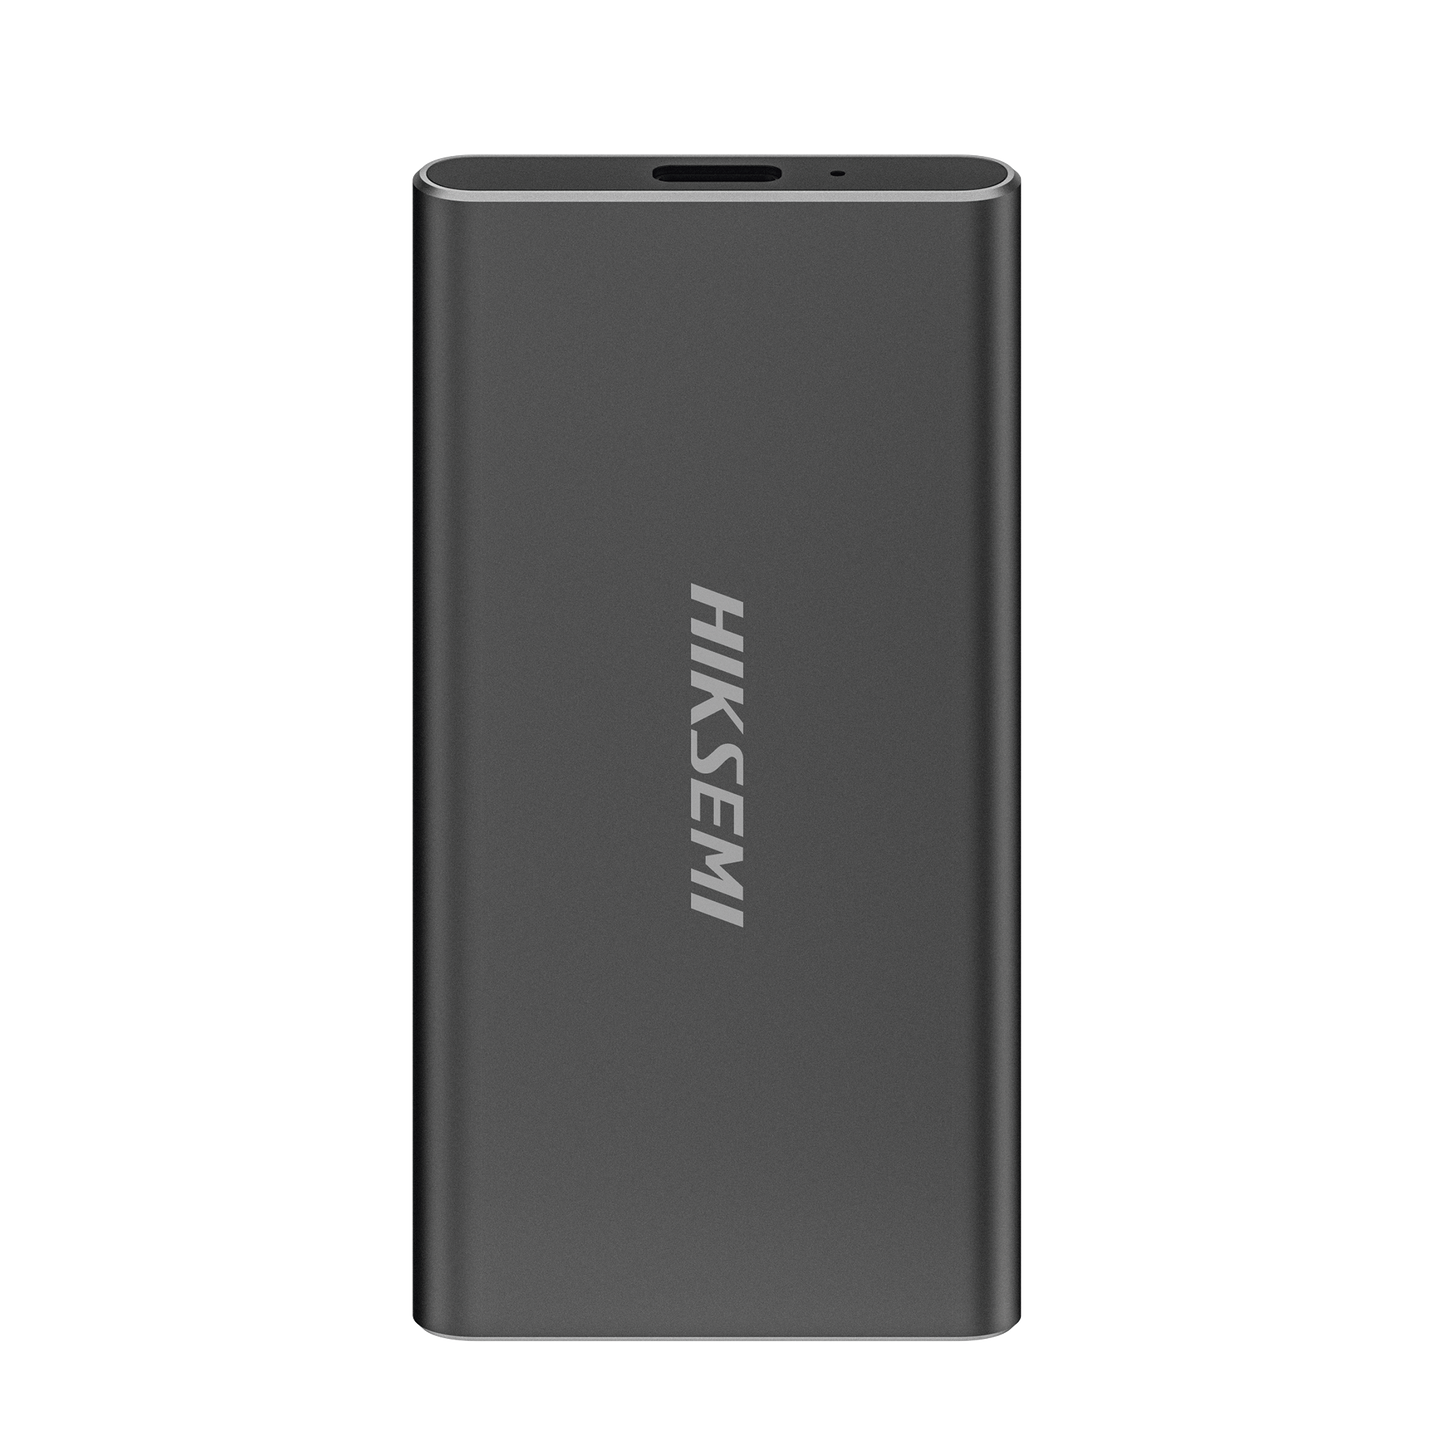 Unidad de Estado Solido (SSD) Portátil / 256 GB / Conector USB 3.2 / Tipo C / Ideal para Almacenar Cualquier Tipo de Información (Videos, Fotos, Documentos, Etc...)